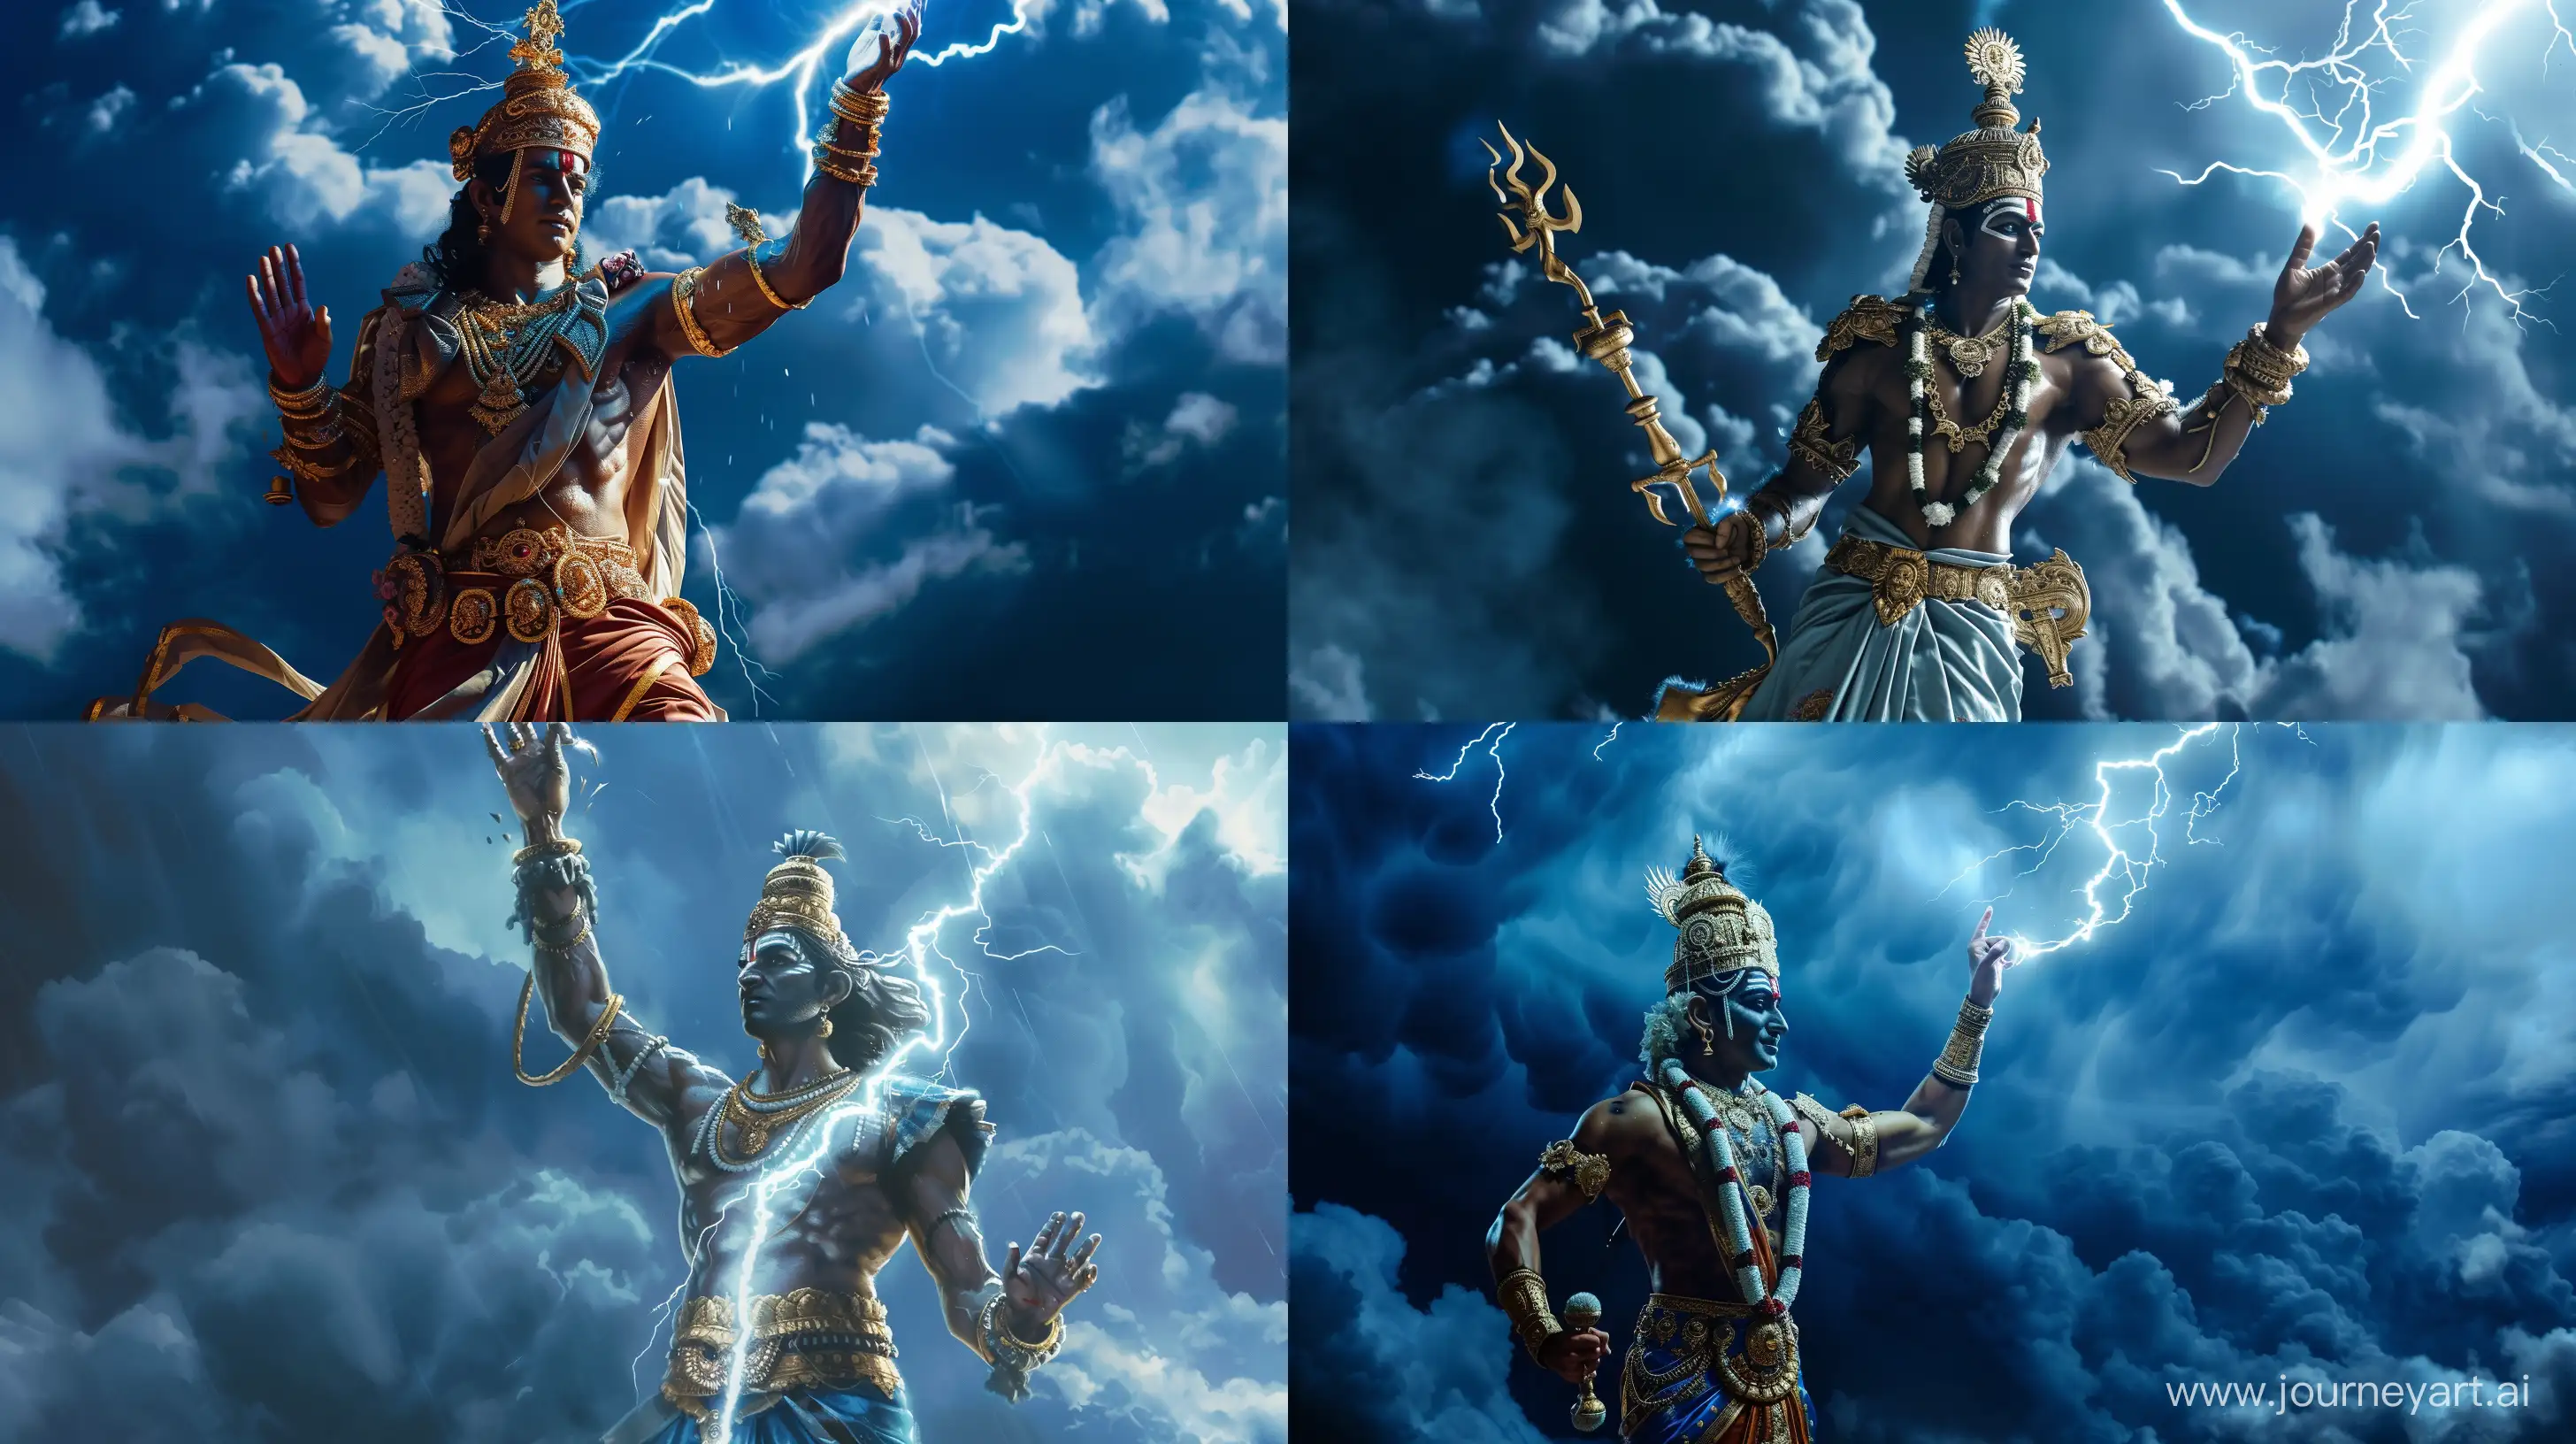 Majestic-Hindu-God-King-Indra-Wielding-Lightning-in-Battle